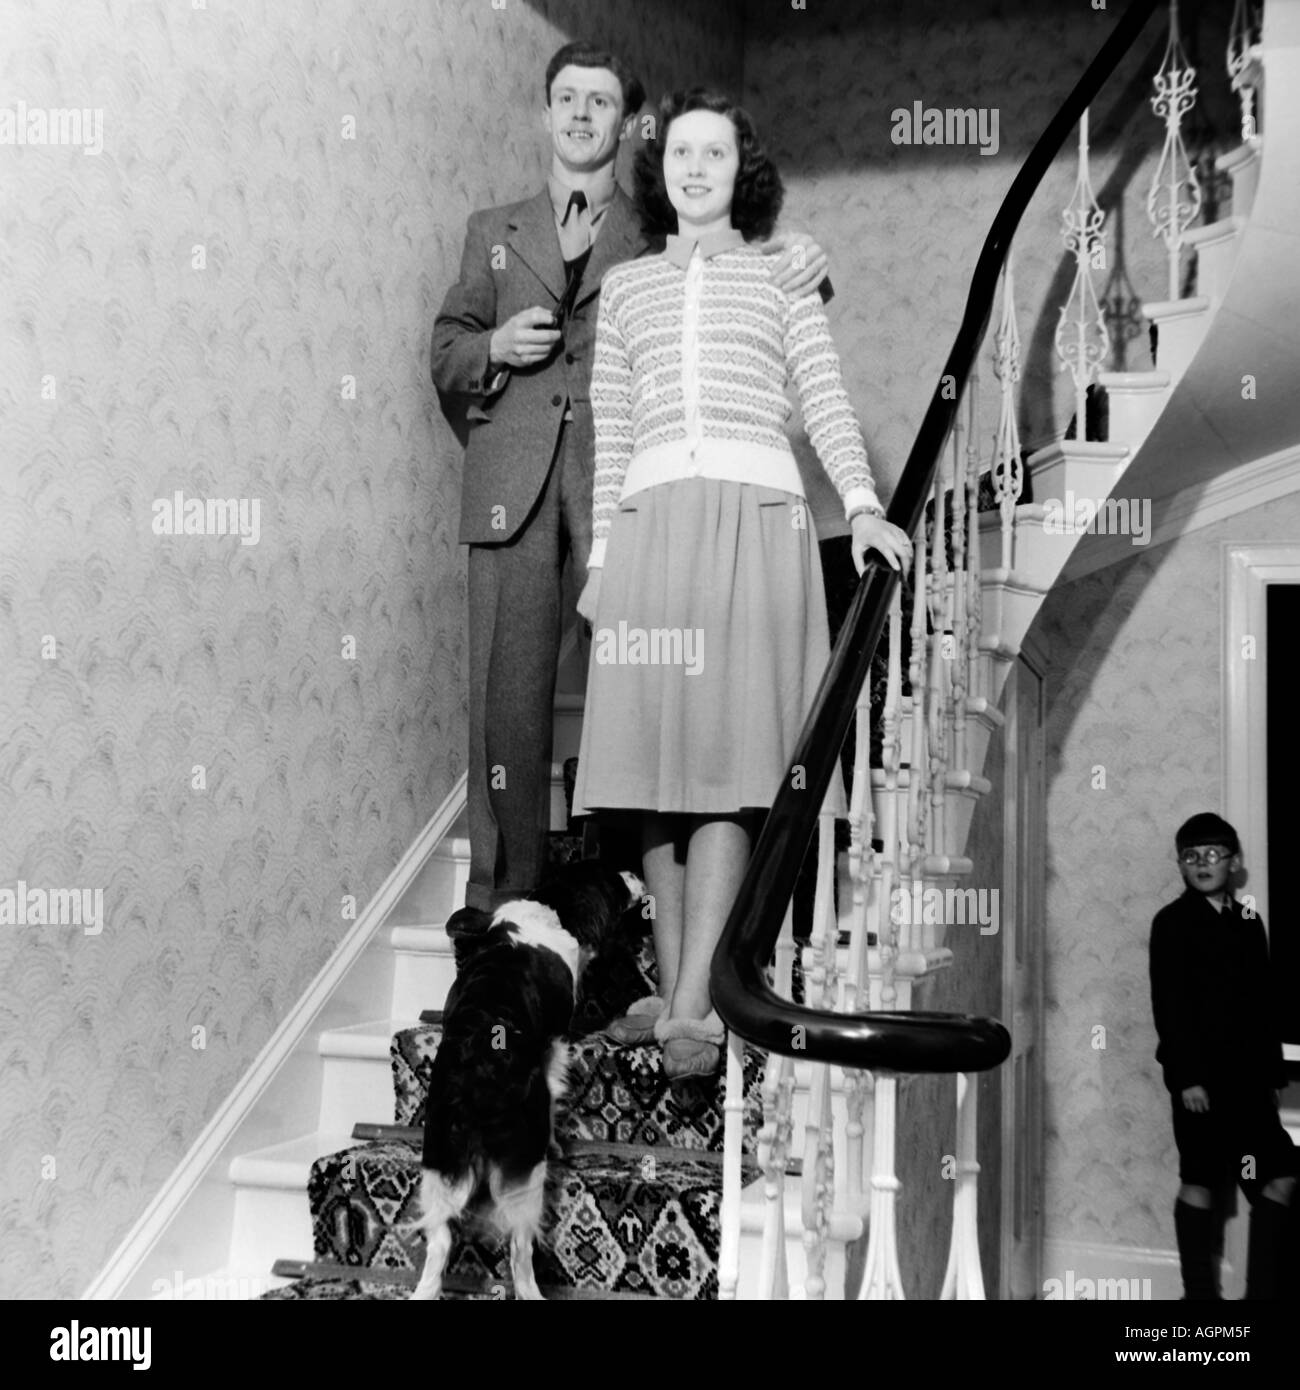 OLD VINTAGE NOIR ET BLANC PHOTOGRAPHIE DE PORTRAIT DE FAMILLE COUPLE STANDING ON STAIRCASE IN HOUSE vers 1950 Banque D'Images